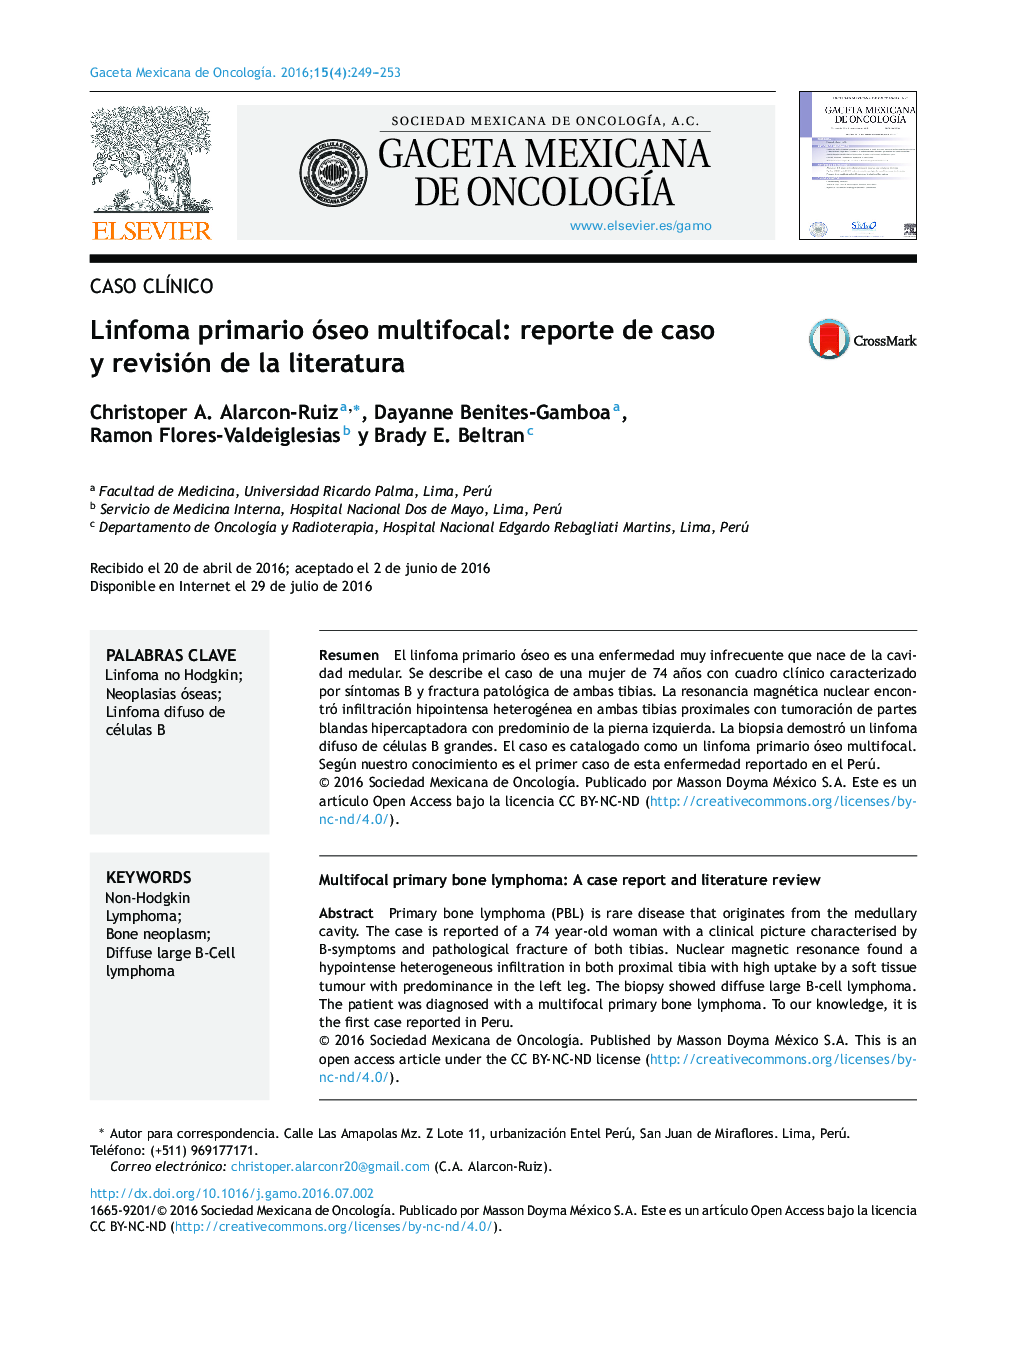 Linfoma primario óseo multifocal: reporte de caso y revisión de la literatura